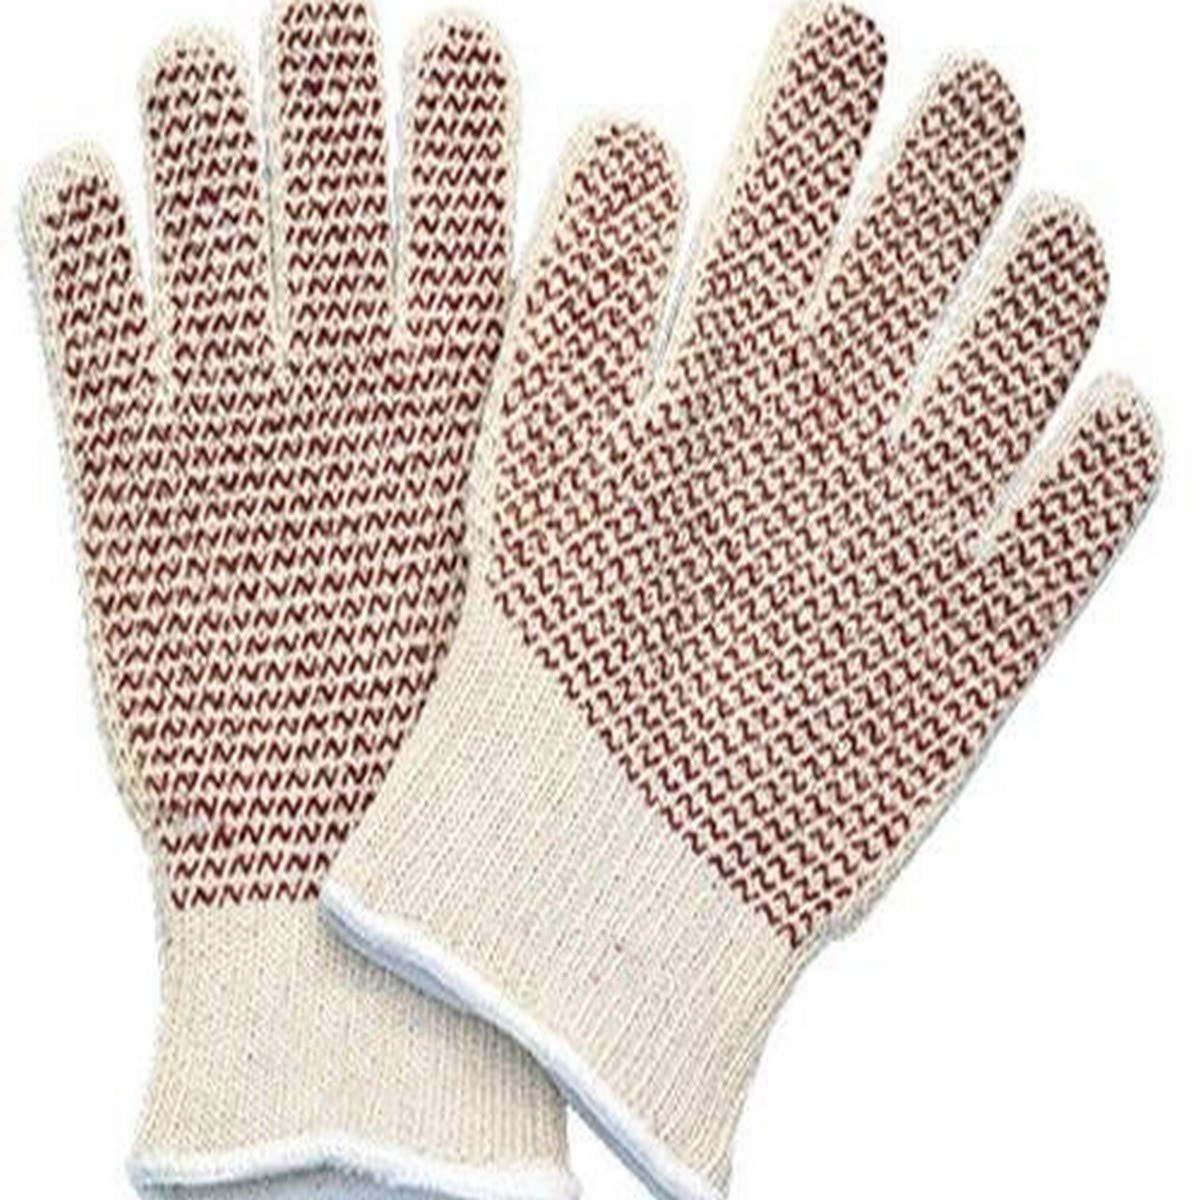 Cotton/Kevlar Gloves,pair, 400F Hot Glove w/grip dots